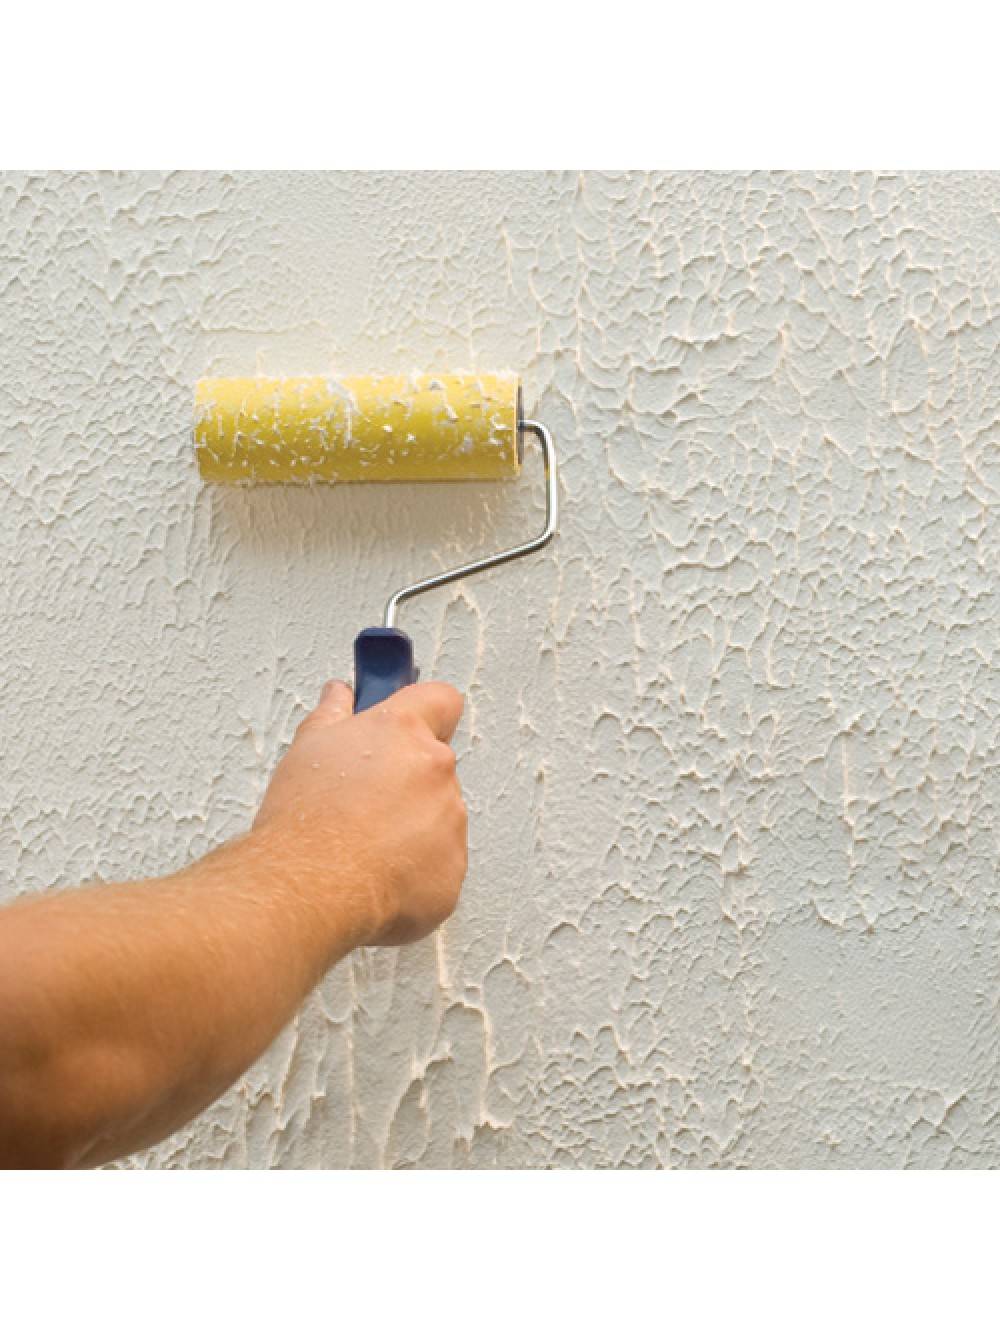 Шпаклевка стен под покраску: как сделать это самостоятельно